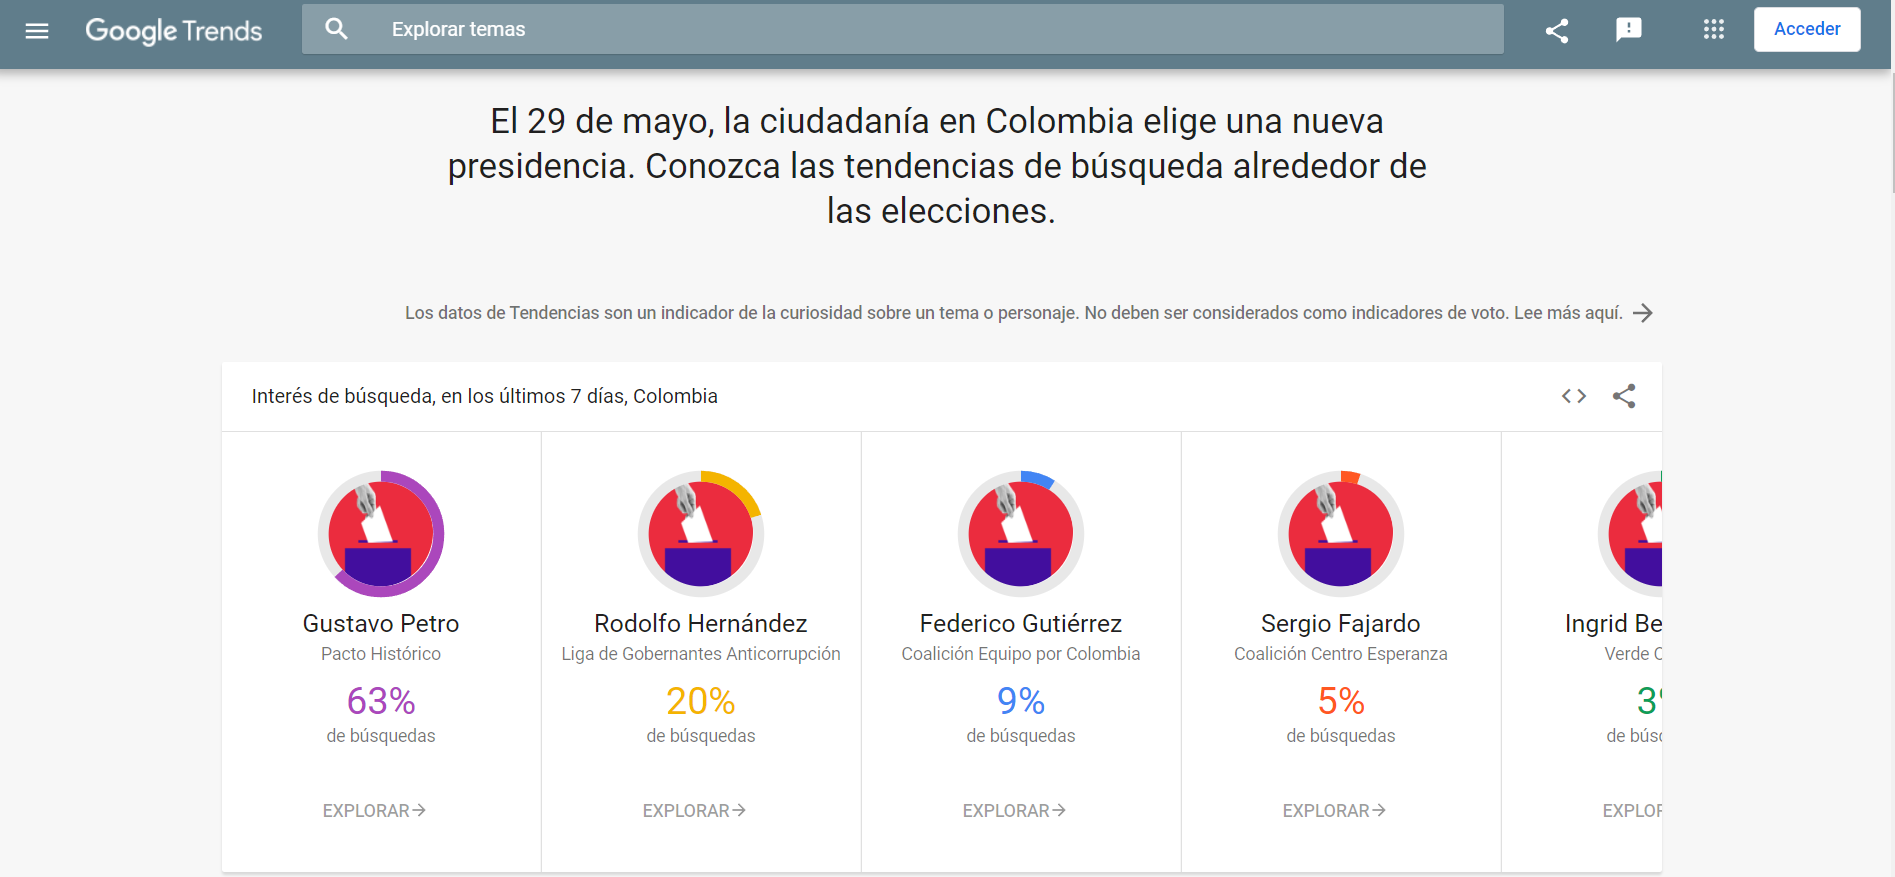 Google generó sobre la base de Trends una versión con información vinculada a las búsquedas relacionadas a las elecciones presidenciales en Colombia